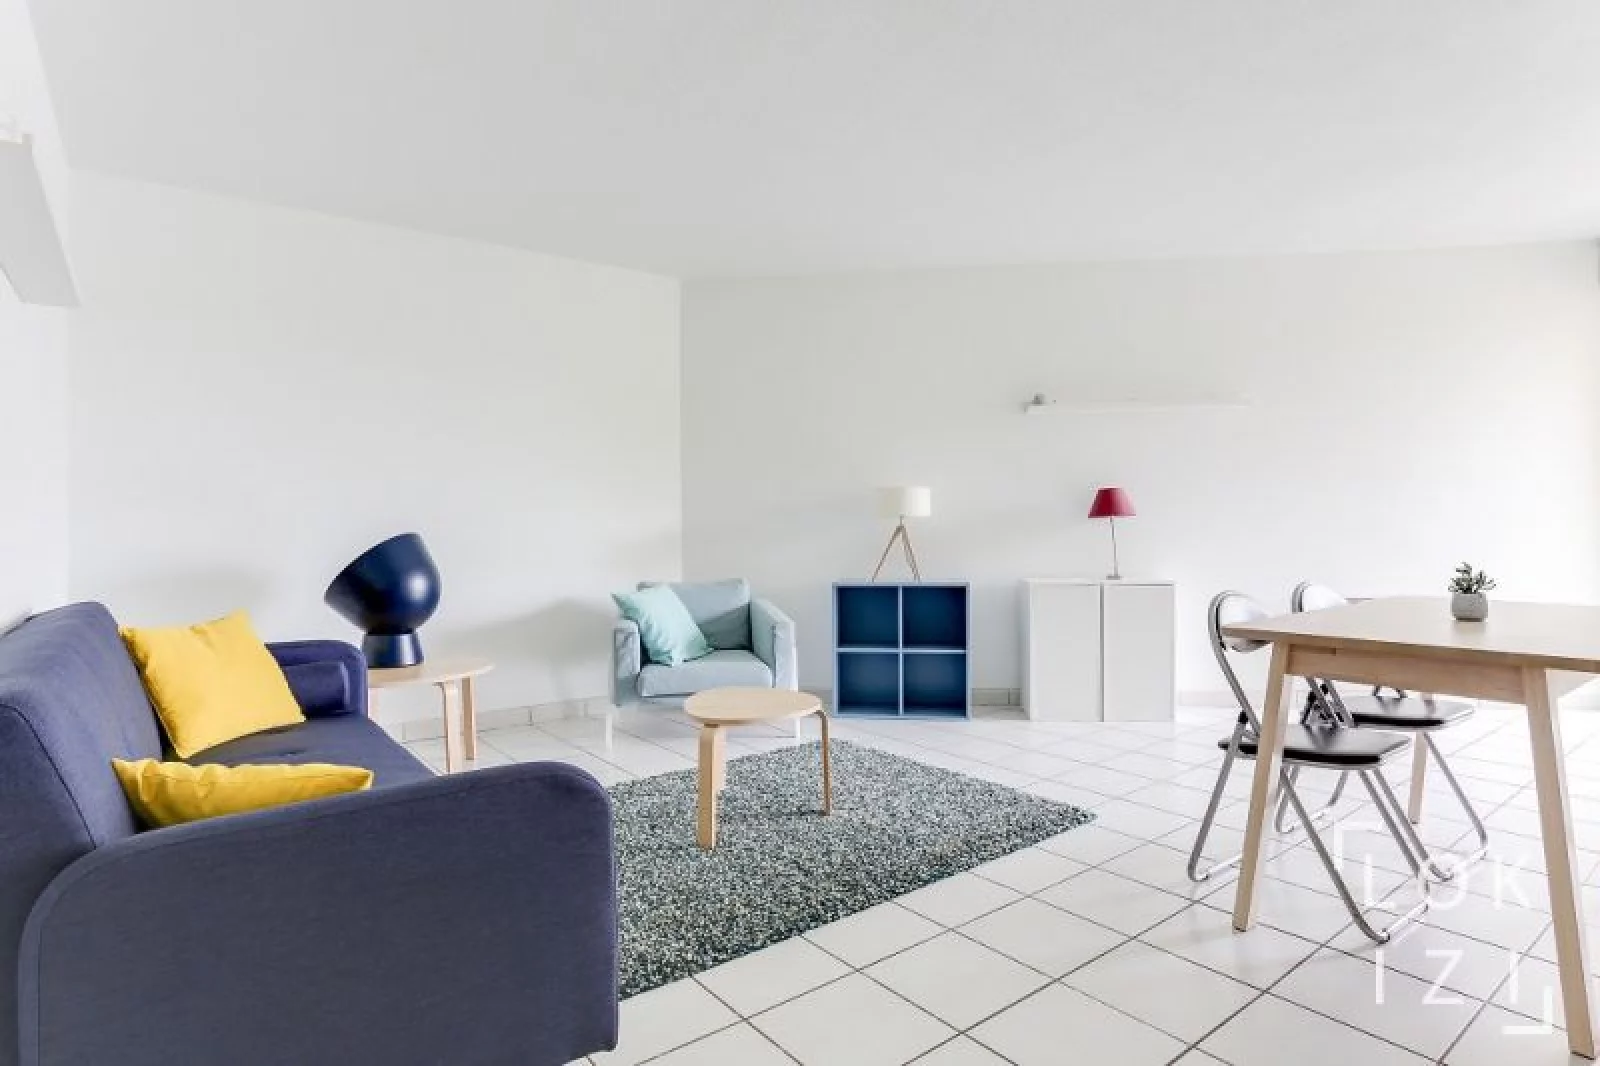 Location appartement meublé 2 pièces 46m² (Bordeaux - Chartrons)